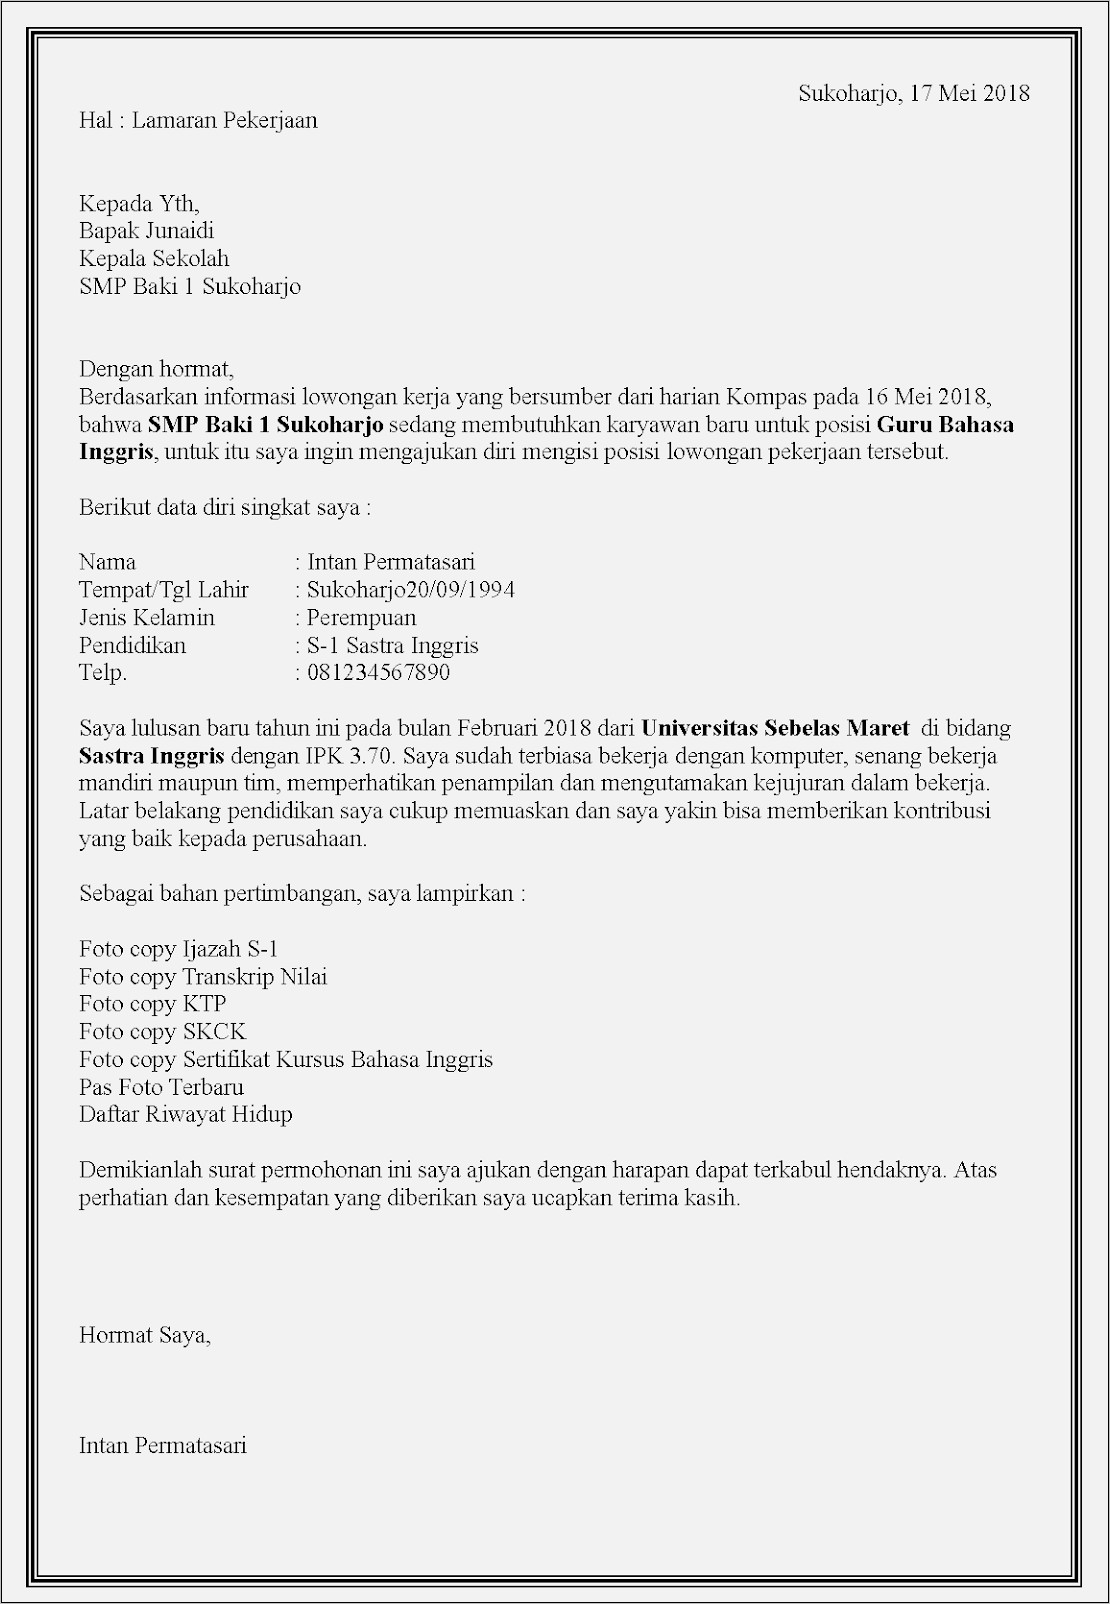 Download Contoh Surat Lamaran Kerja Guru Smp